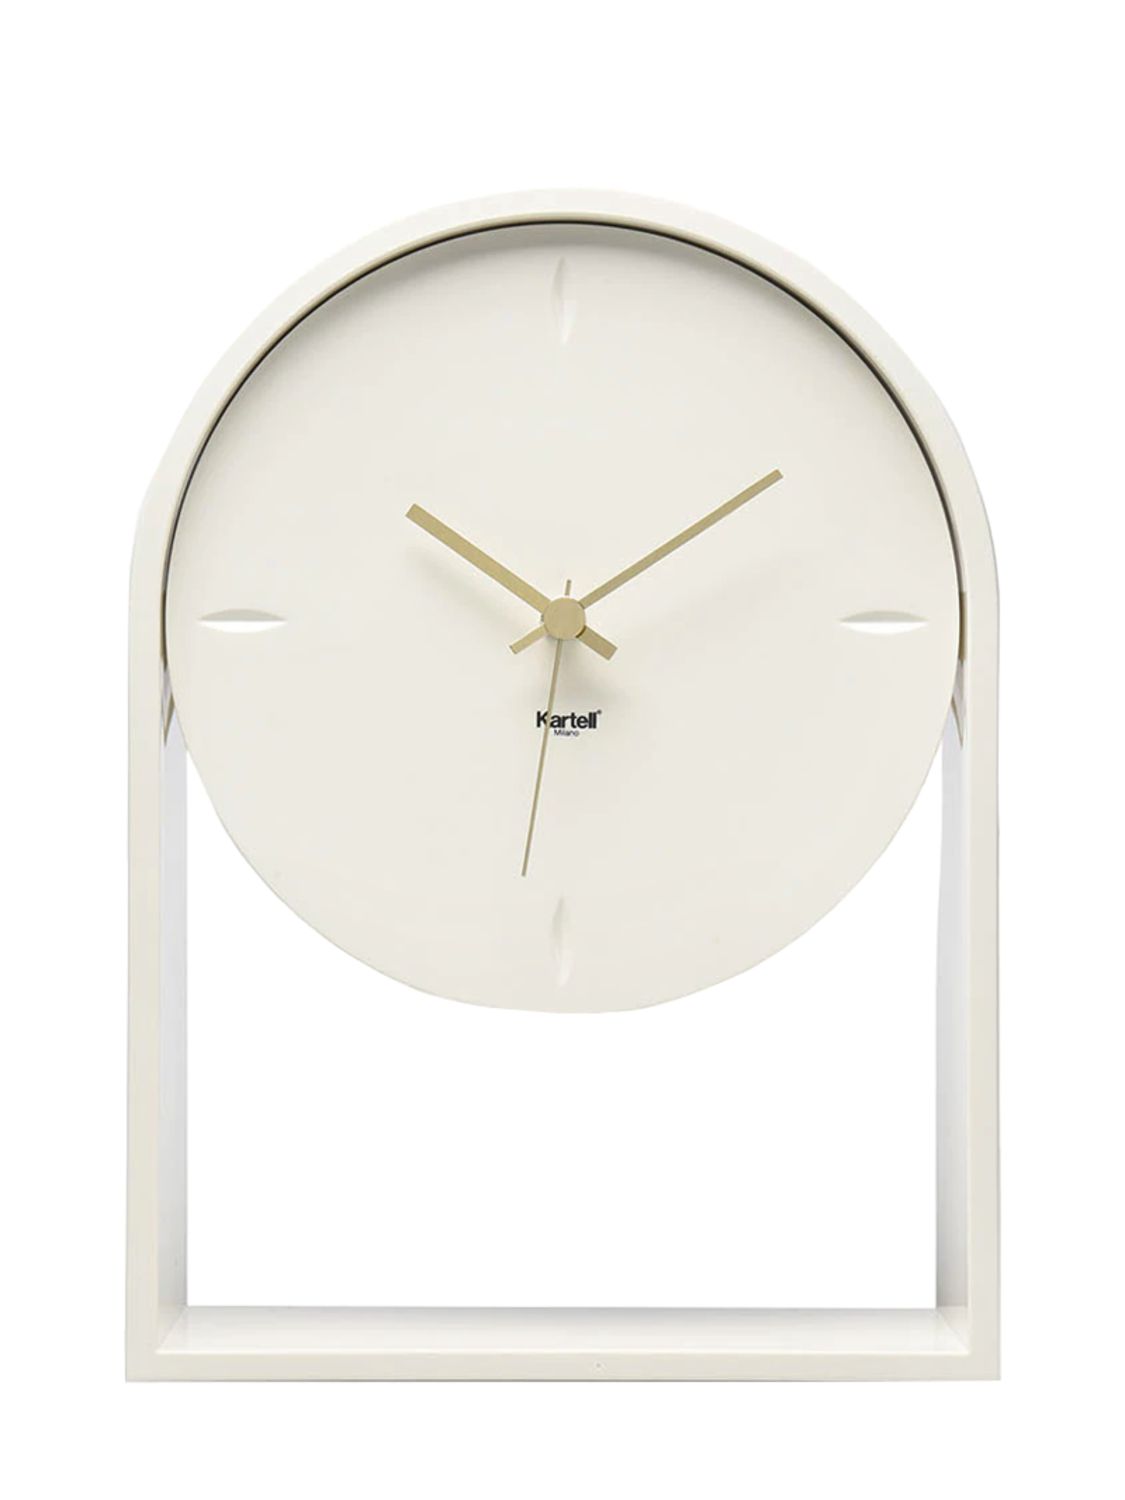 Kartell Air Du Temps Clock In White